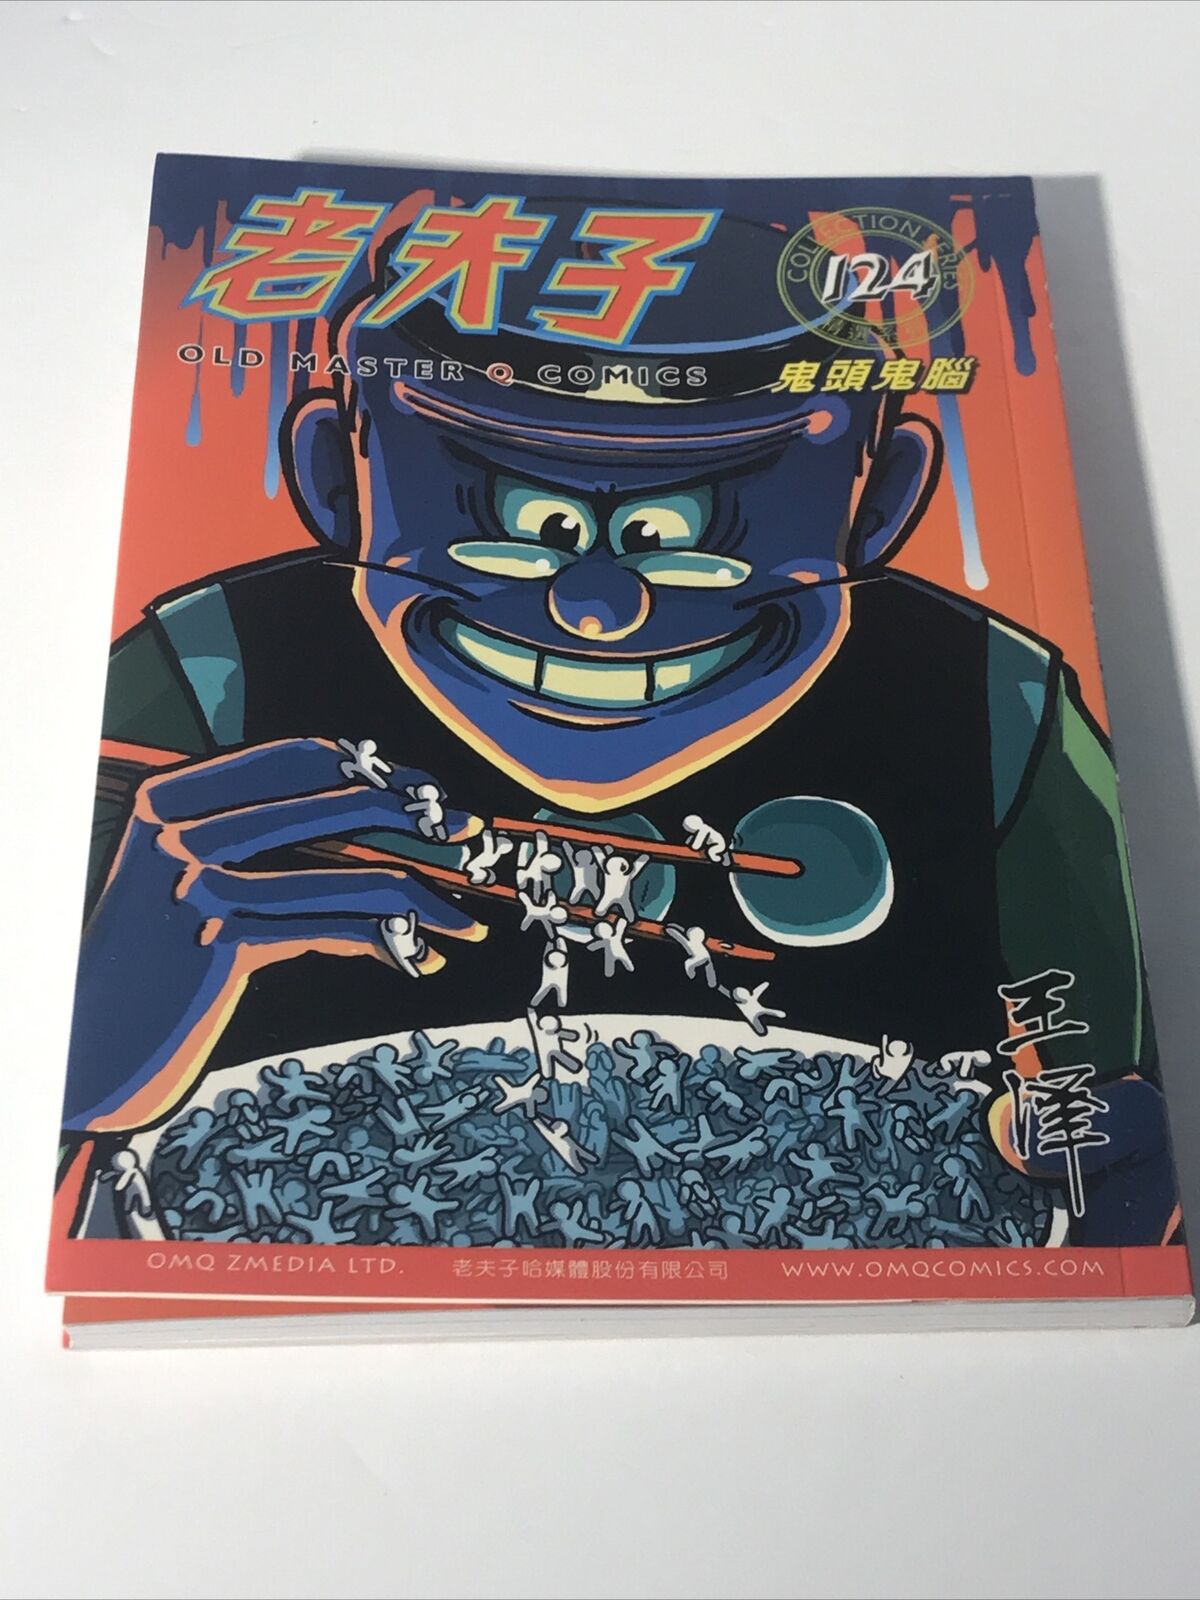 New Old Master Q Comics Collection Series #124 - 老夫子 - Chinese Hong Kong Manhua